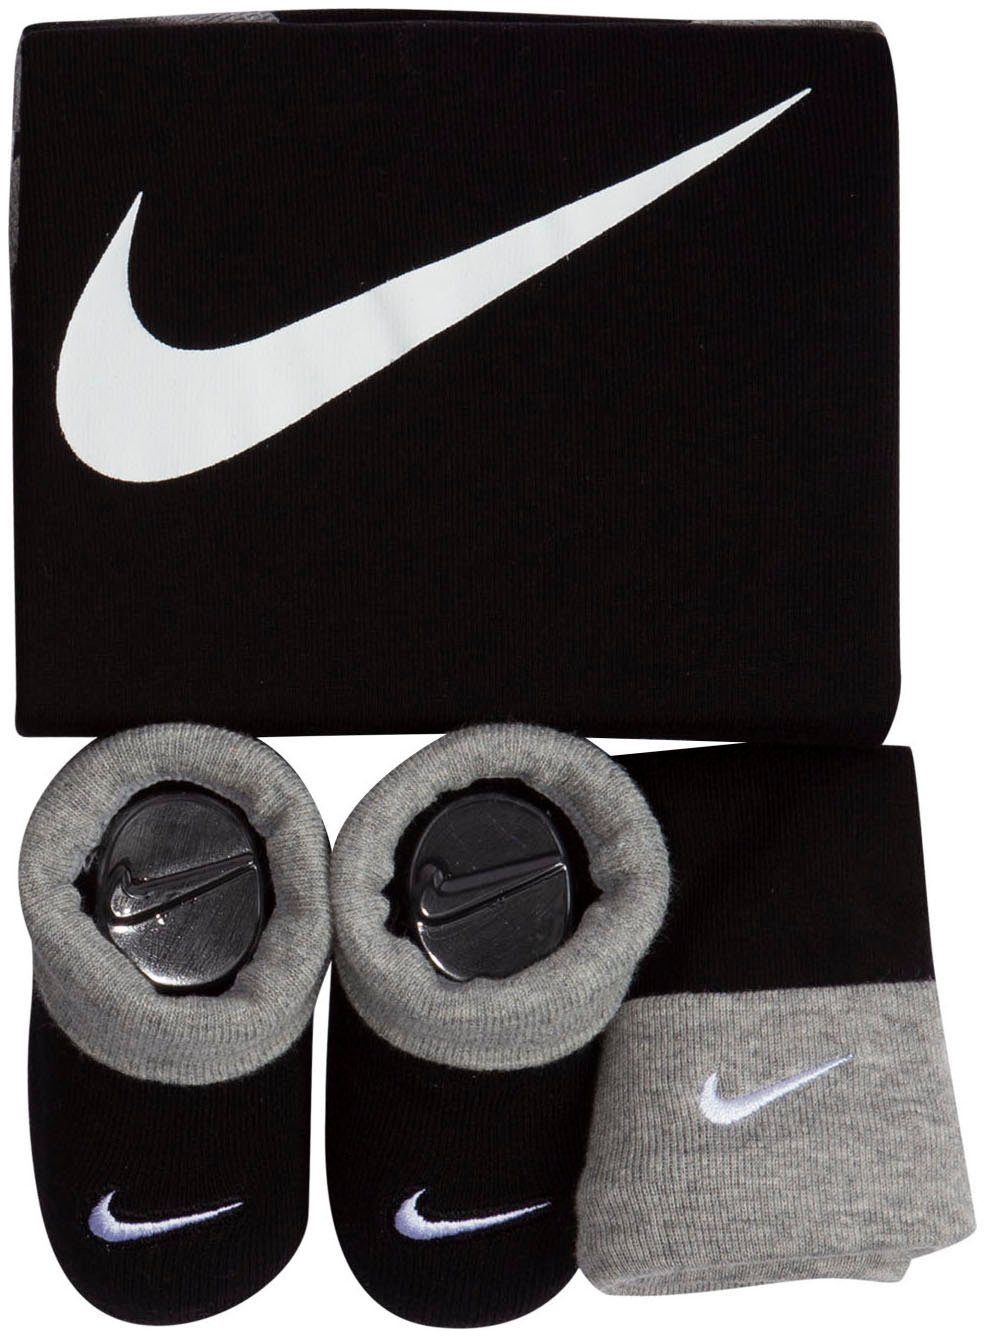 Sportswear Nike Neugeborenen-Geschenkset Erstausstattungspaket 3-tlg) schwarz (Set,